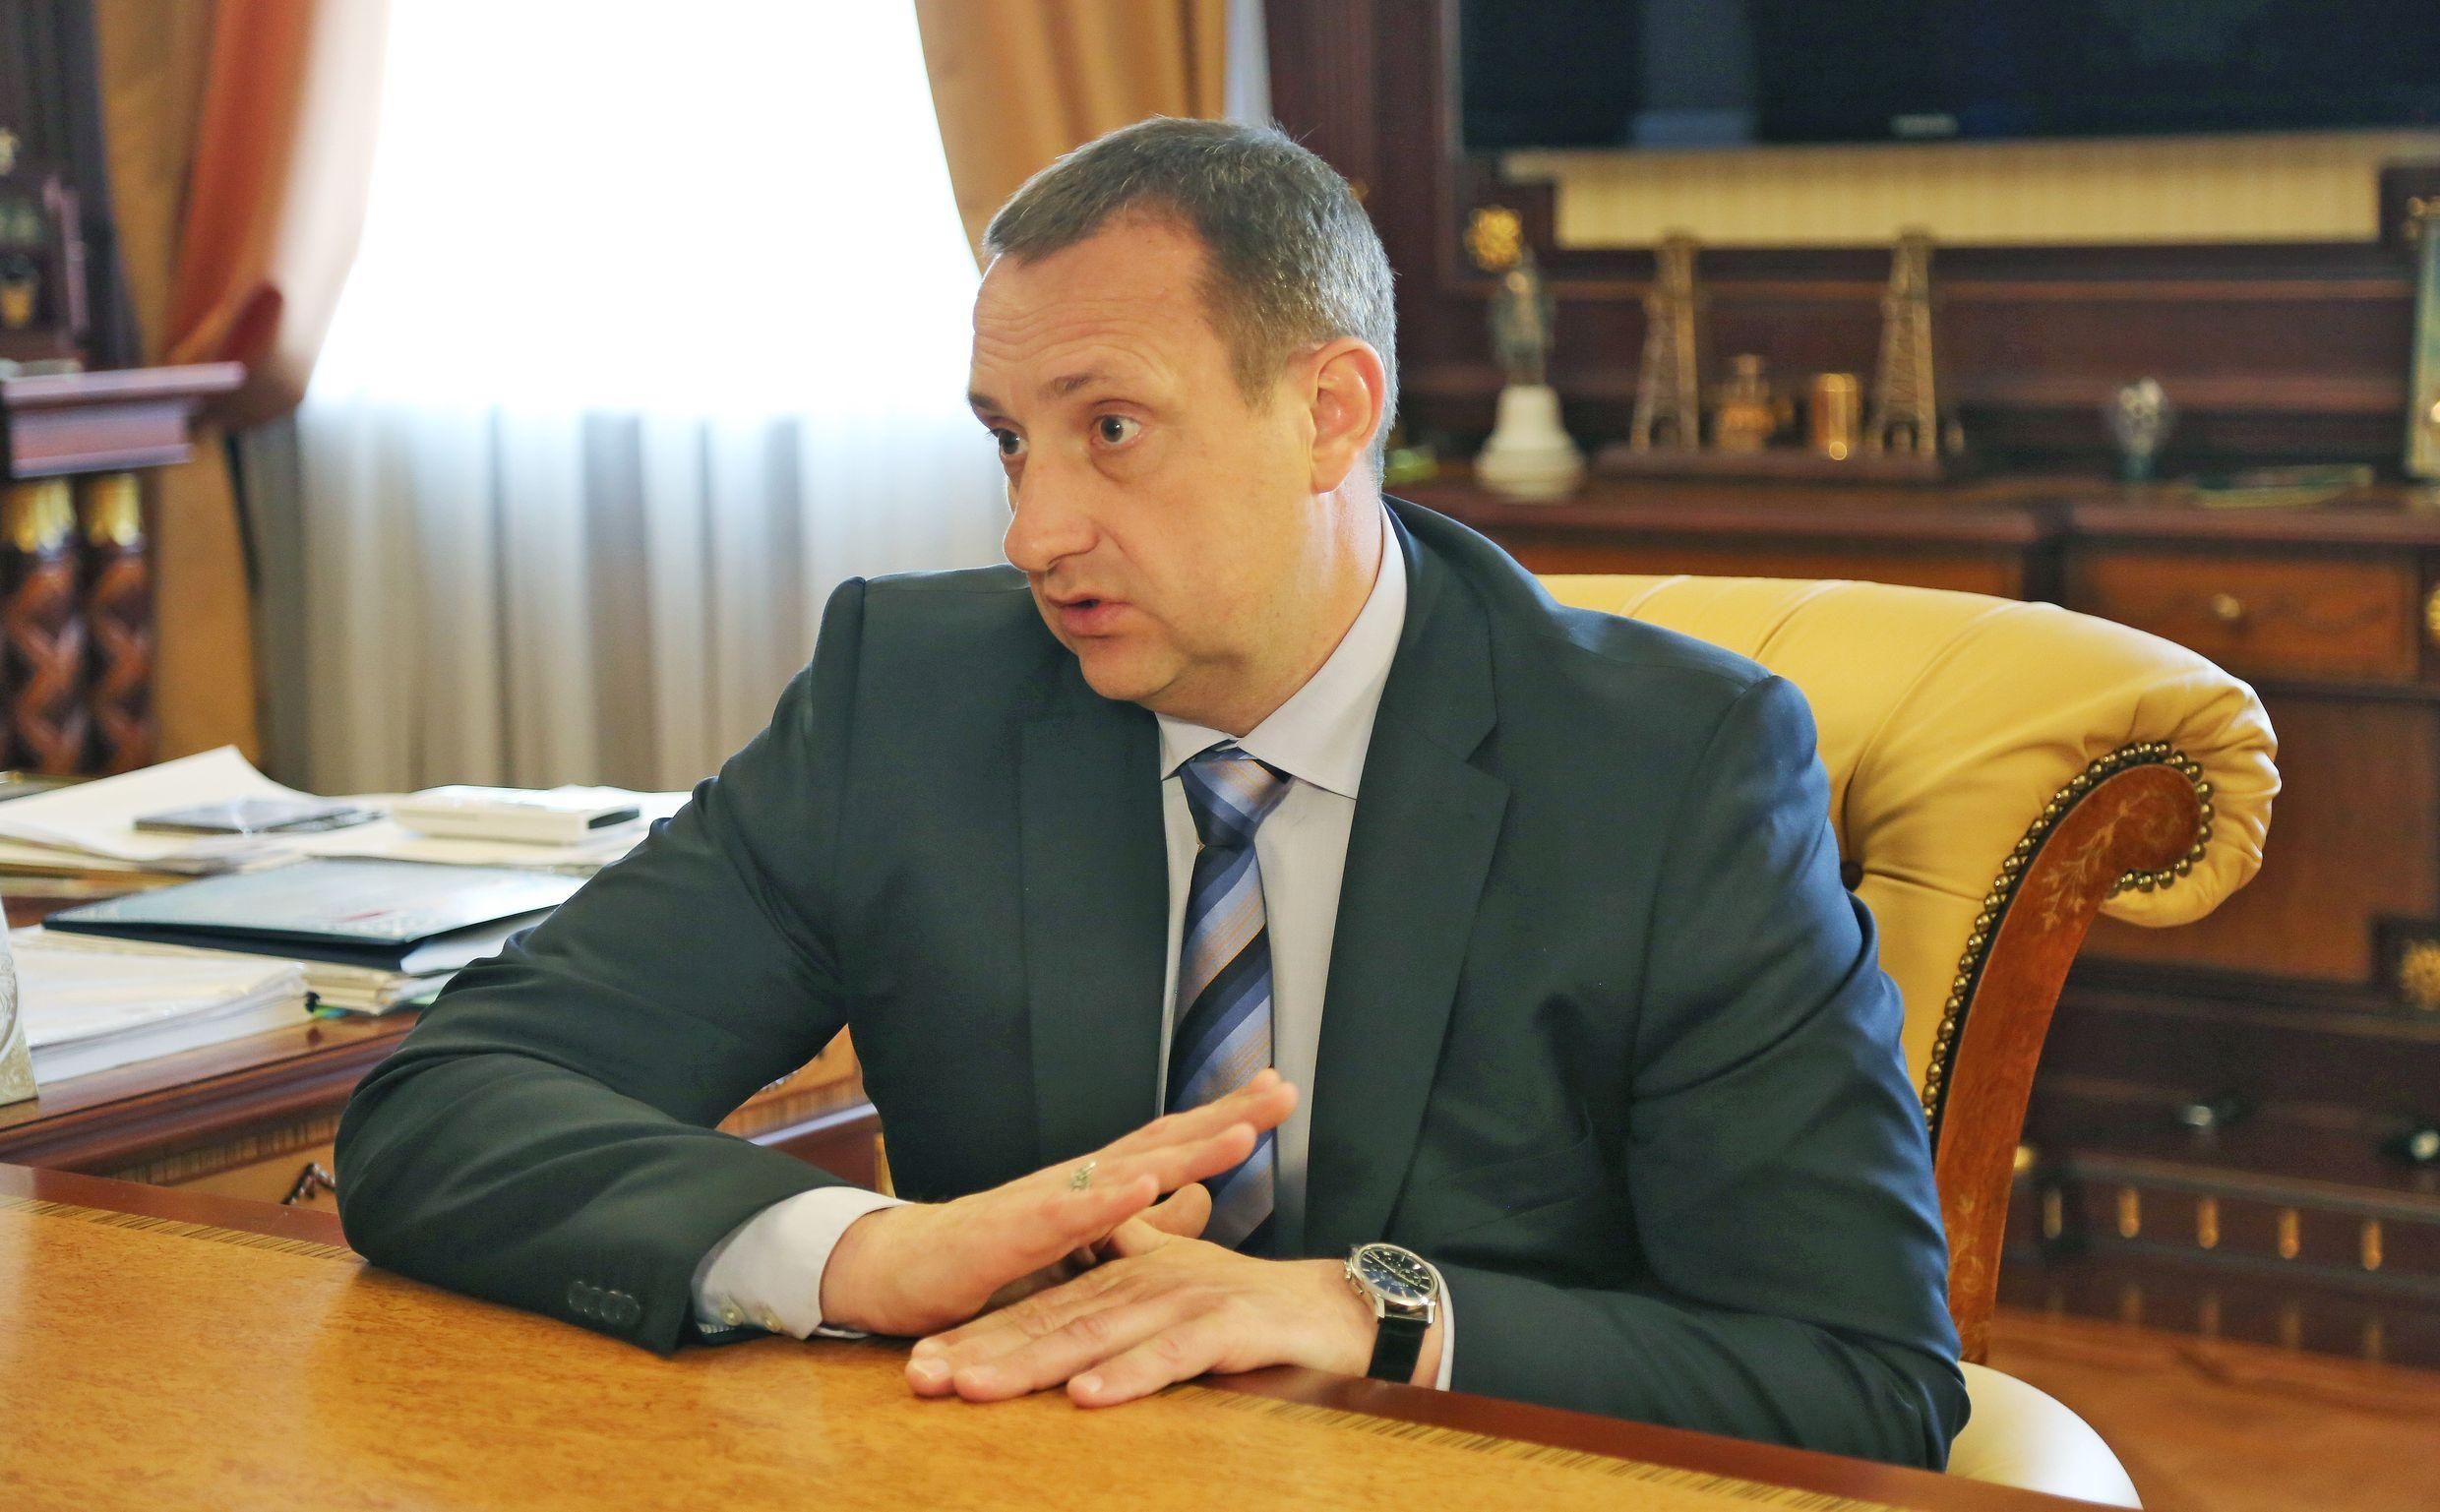 "Віце-прем'єр" окупованого Криму подав у відставку